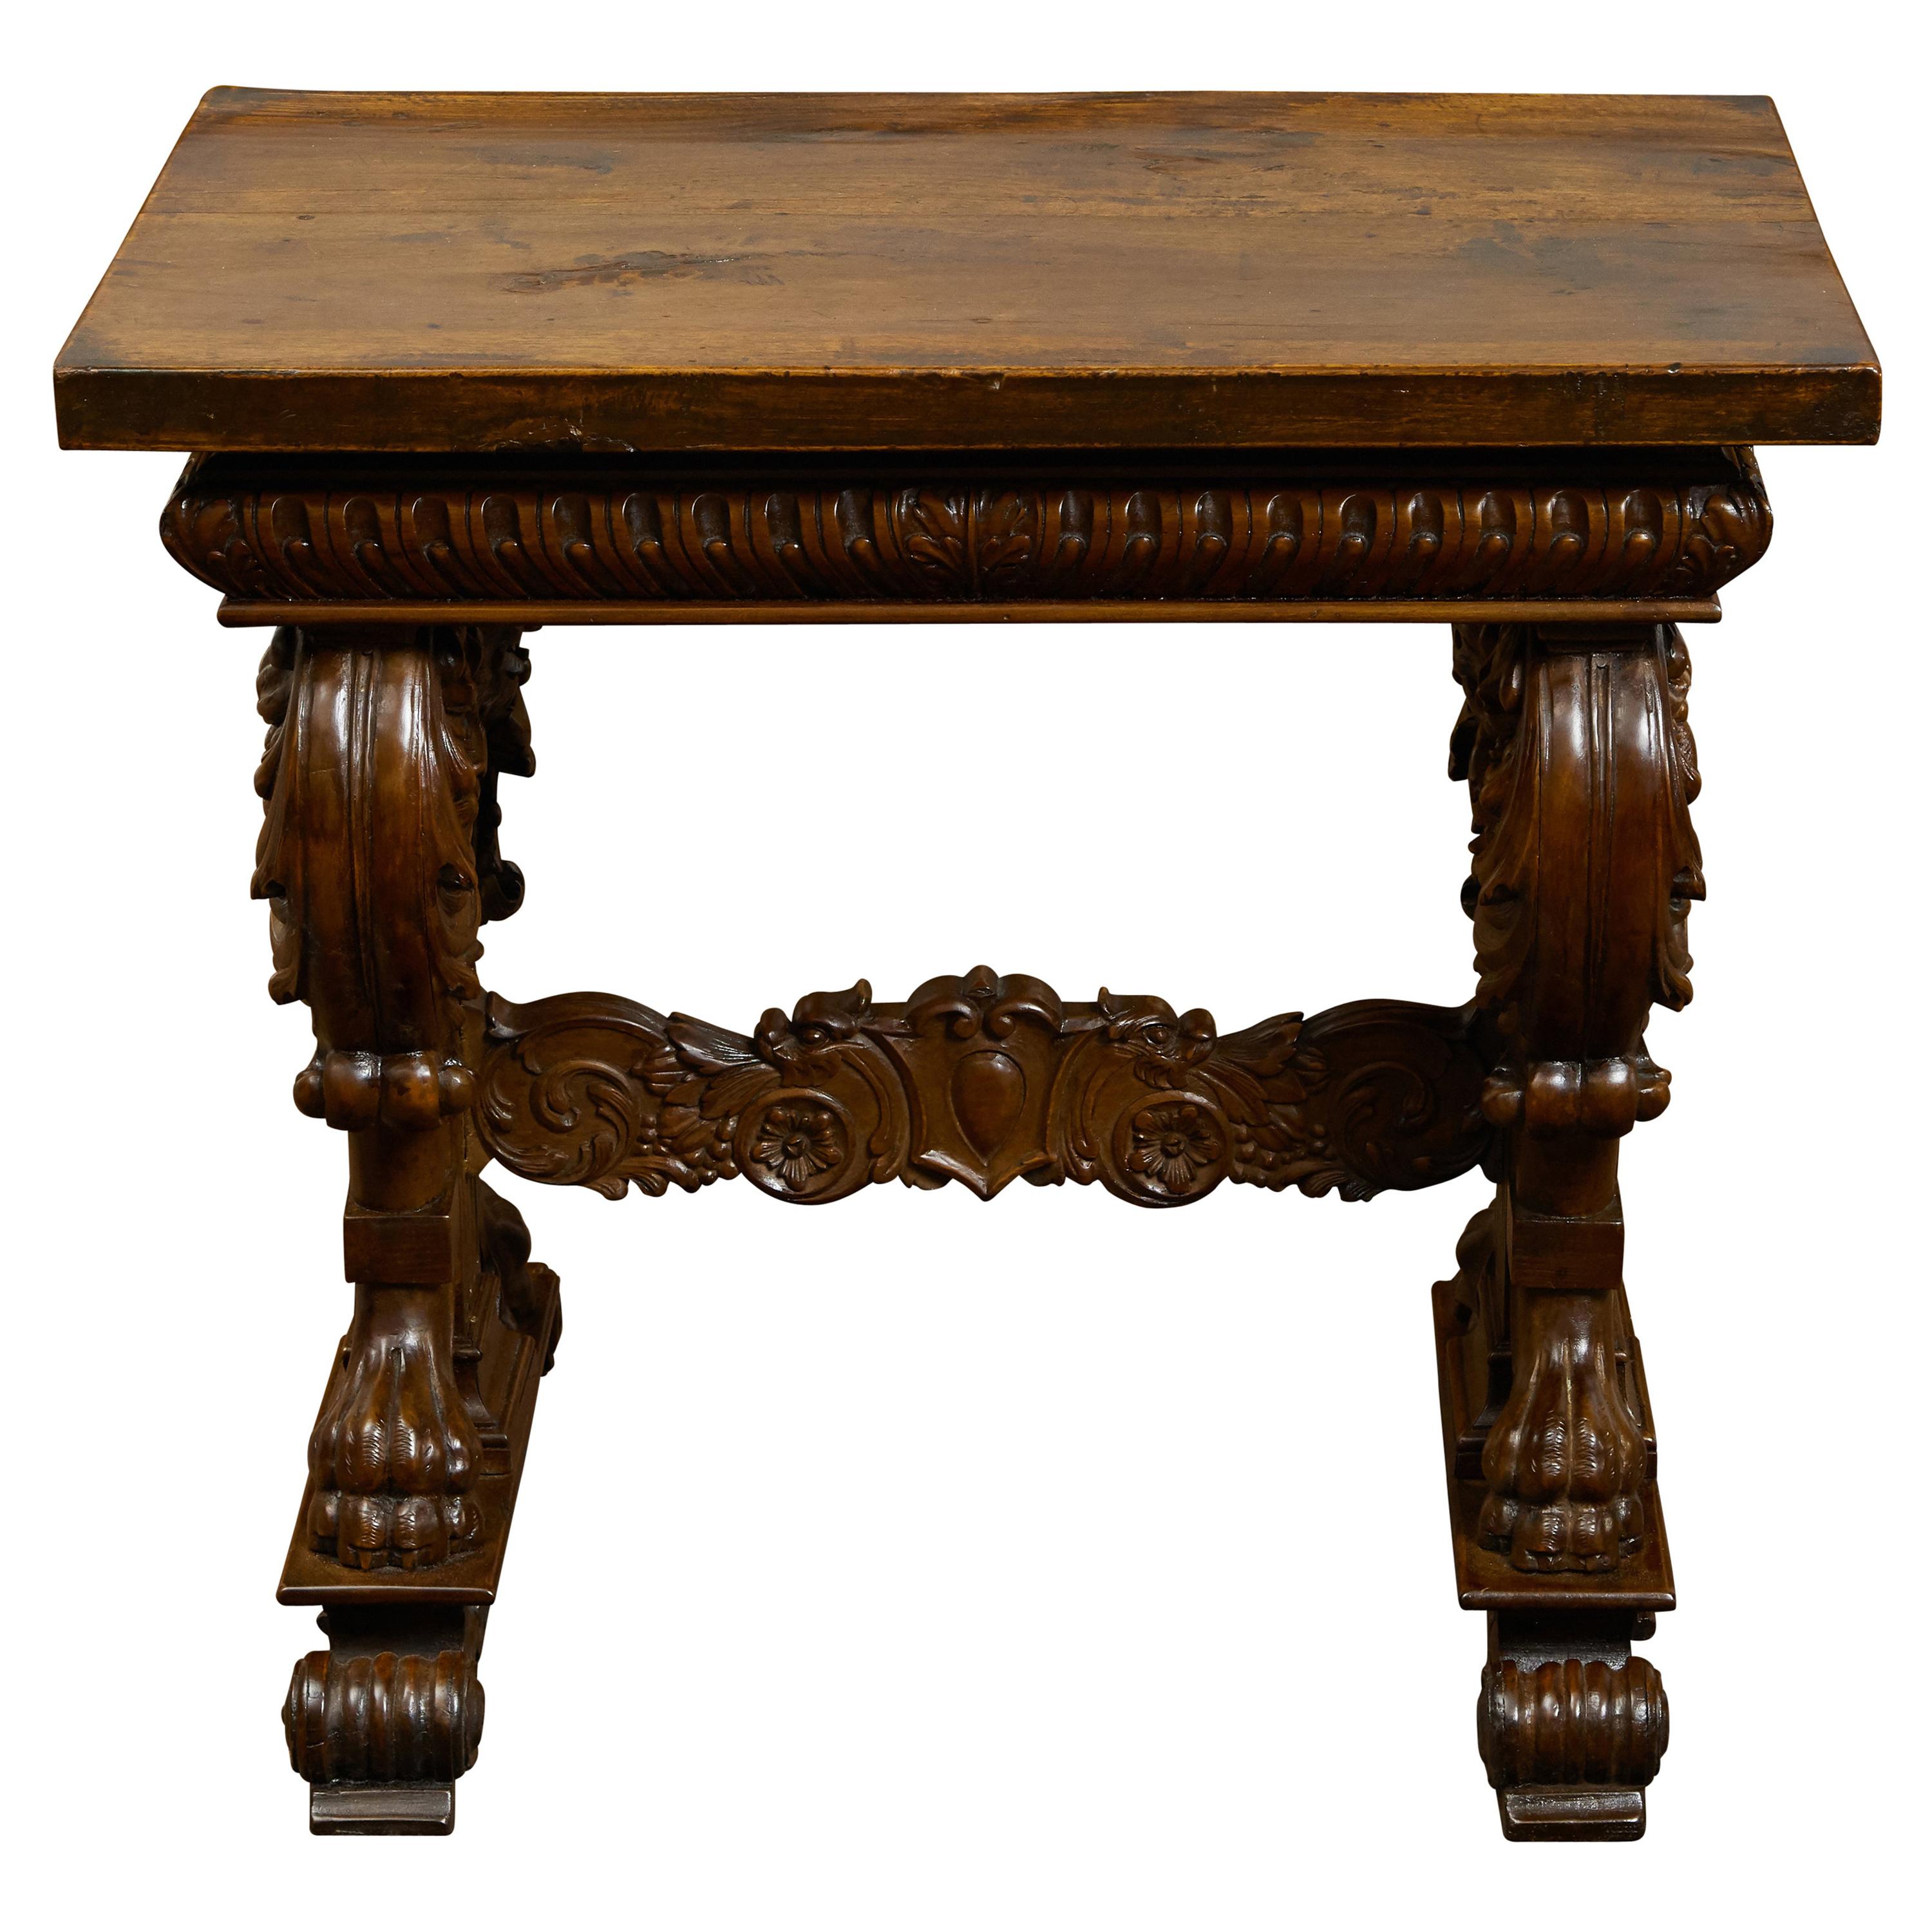 Table d'appoint italienne des années 1800 en noyer avec motifs de lion et base à tréteaux richement sculptée